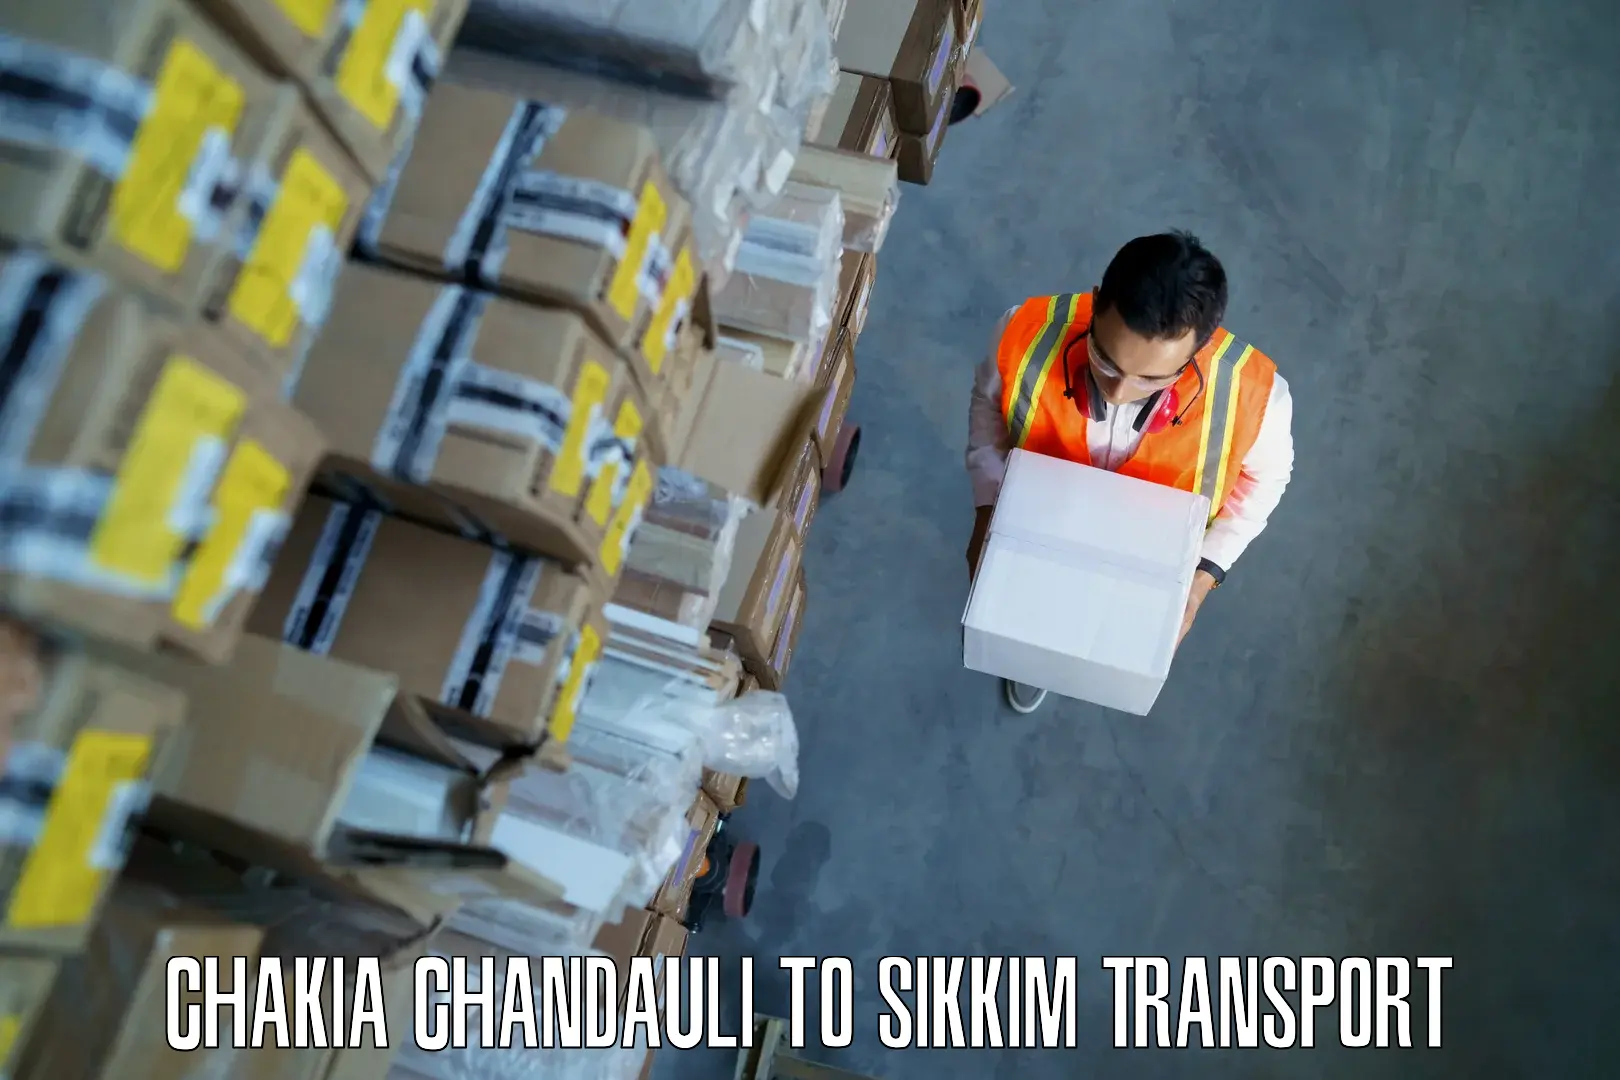 Pick up transport service Chakia Chandauli to Pelling